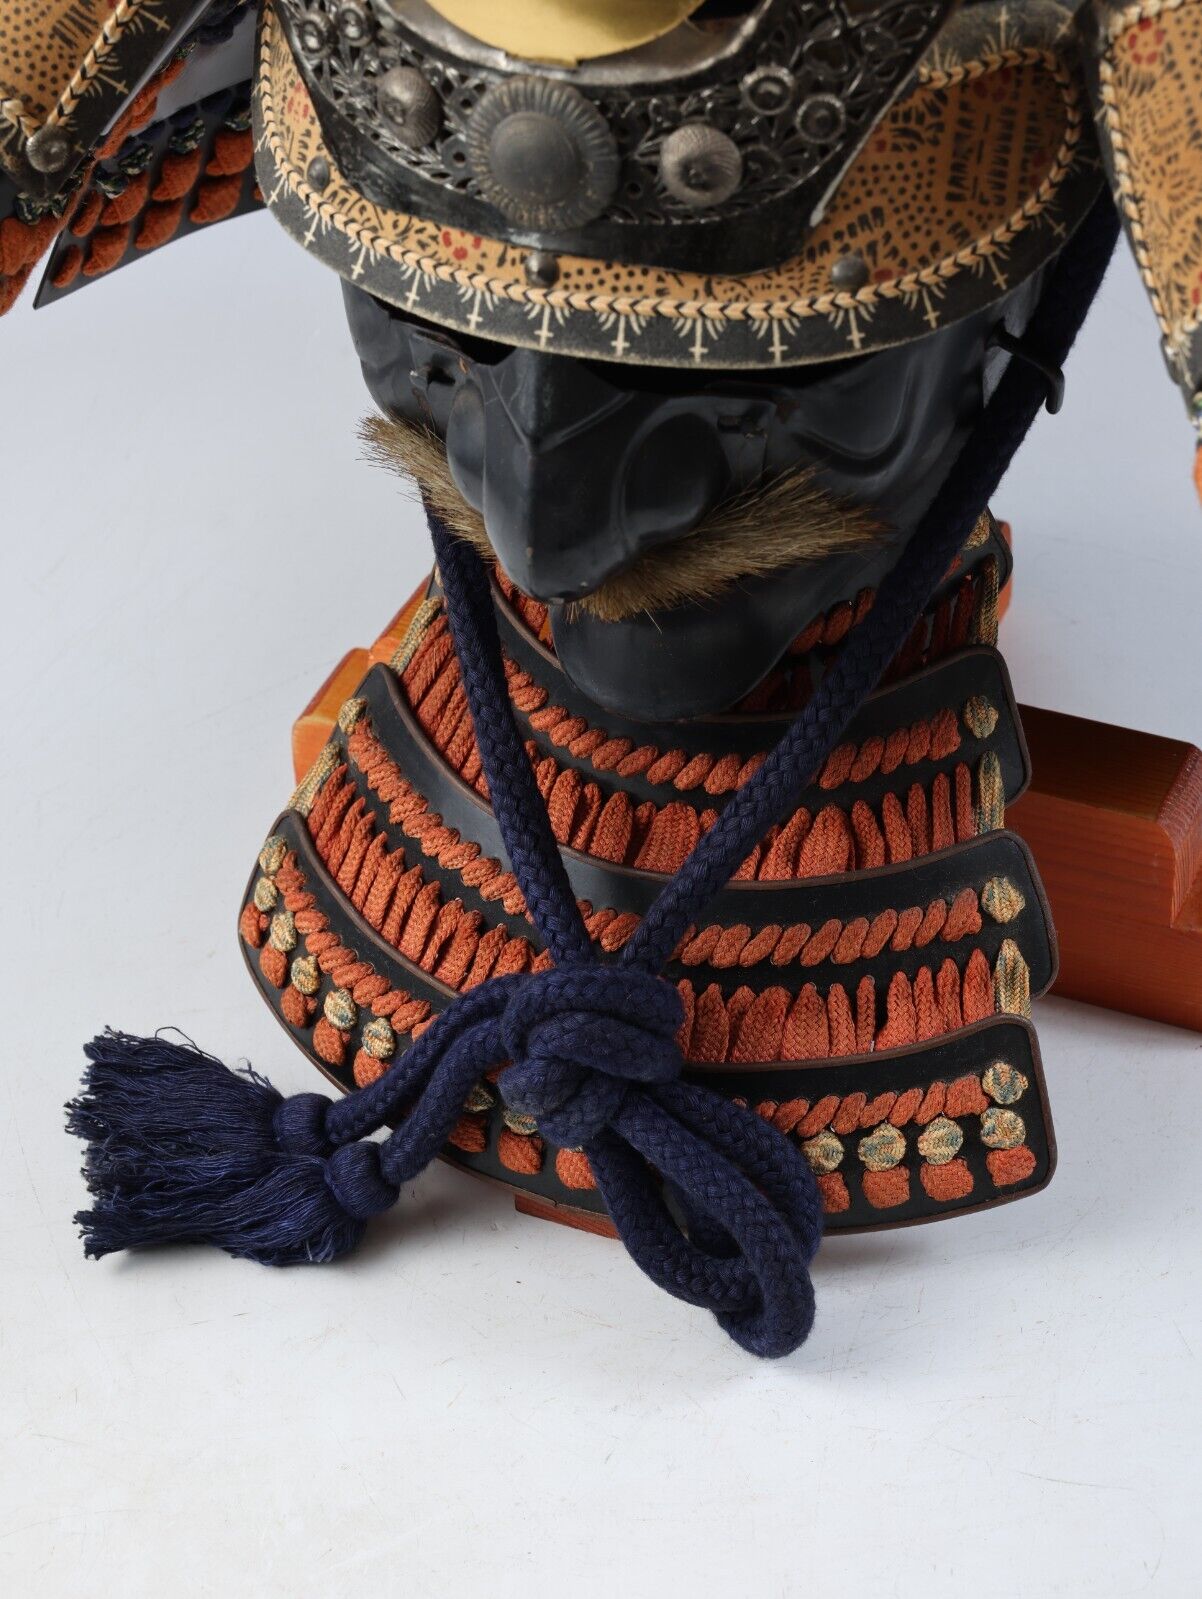 Antique Collectible Japanese Samurai Armor Kabuto Helmet with a Mask Headgear.